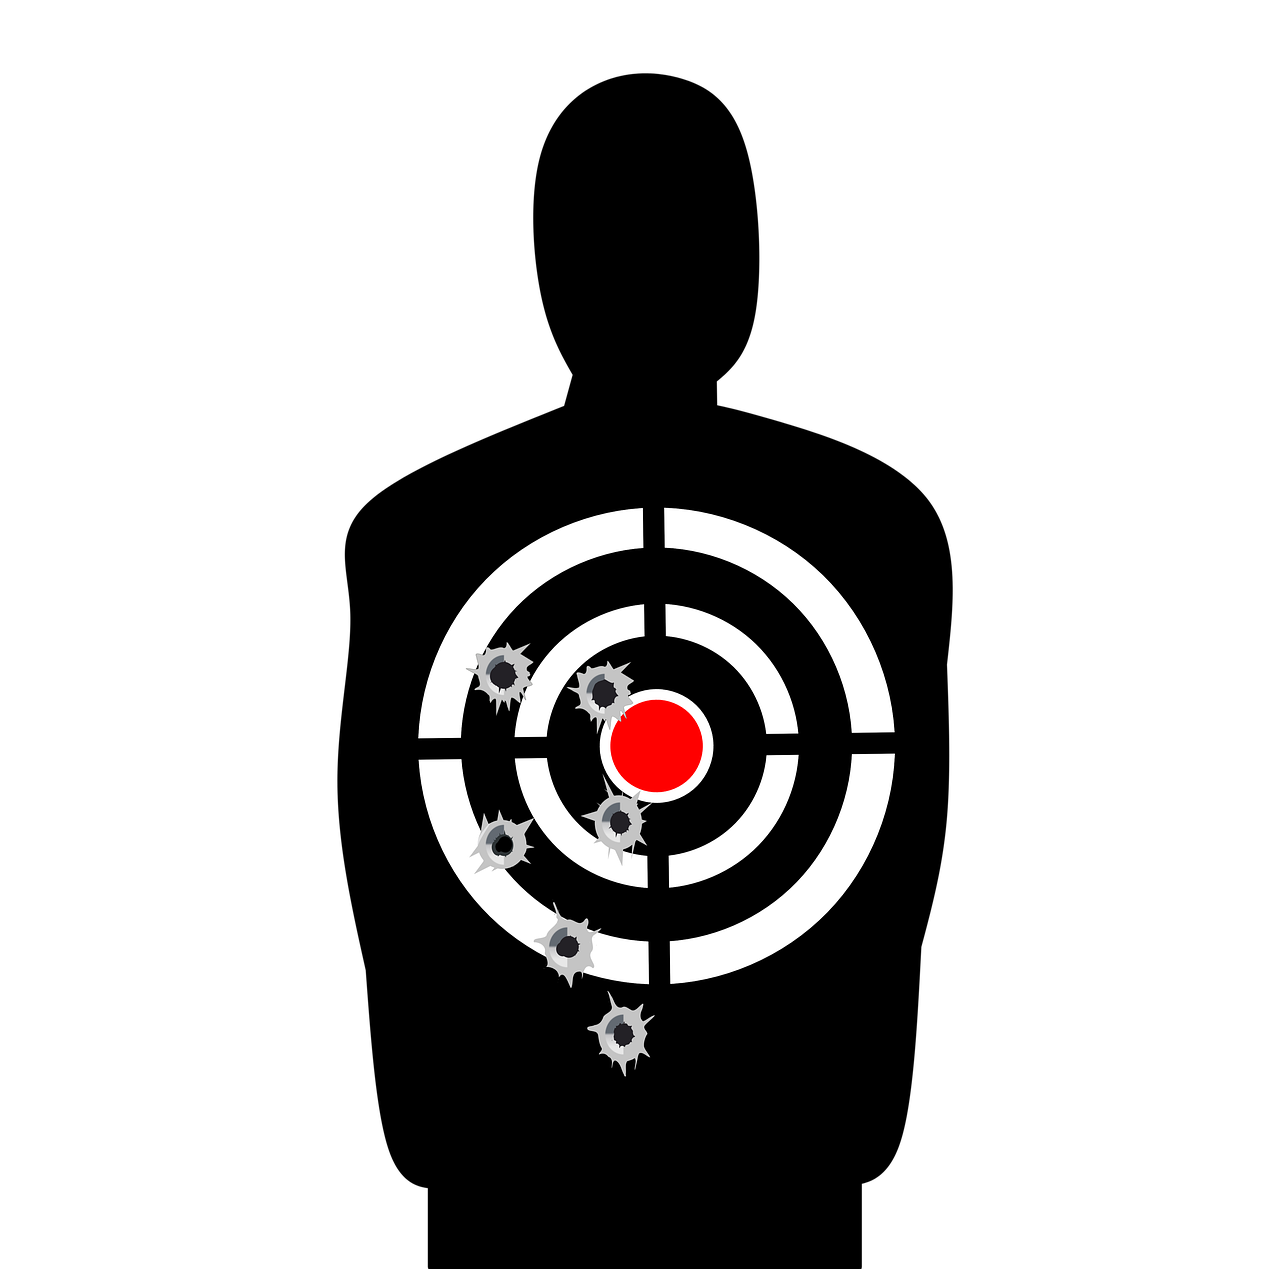 Gun Accuracy test target, shooting, range